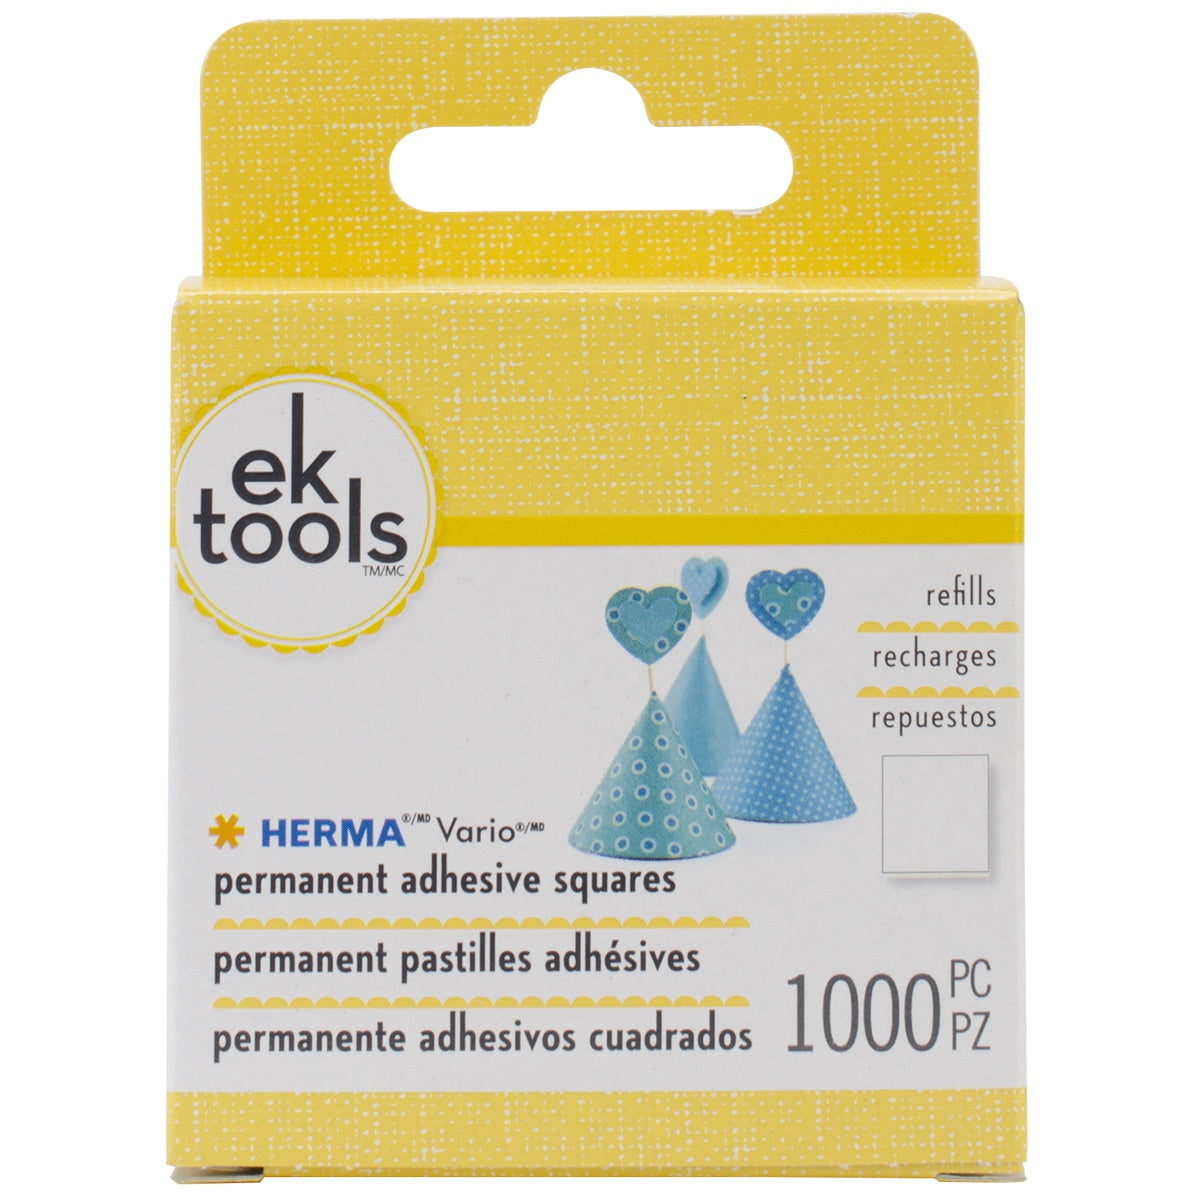 Multipack of 12 - EK Tools HERMA Vario Adhesive Tab Refill Permanent-Permanent-1000pcs, For E5501074